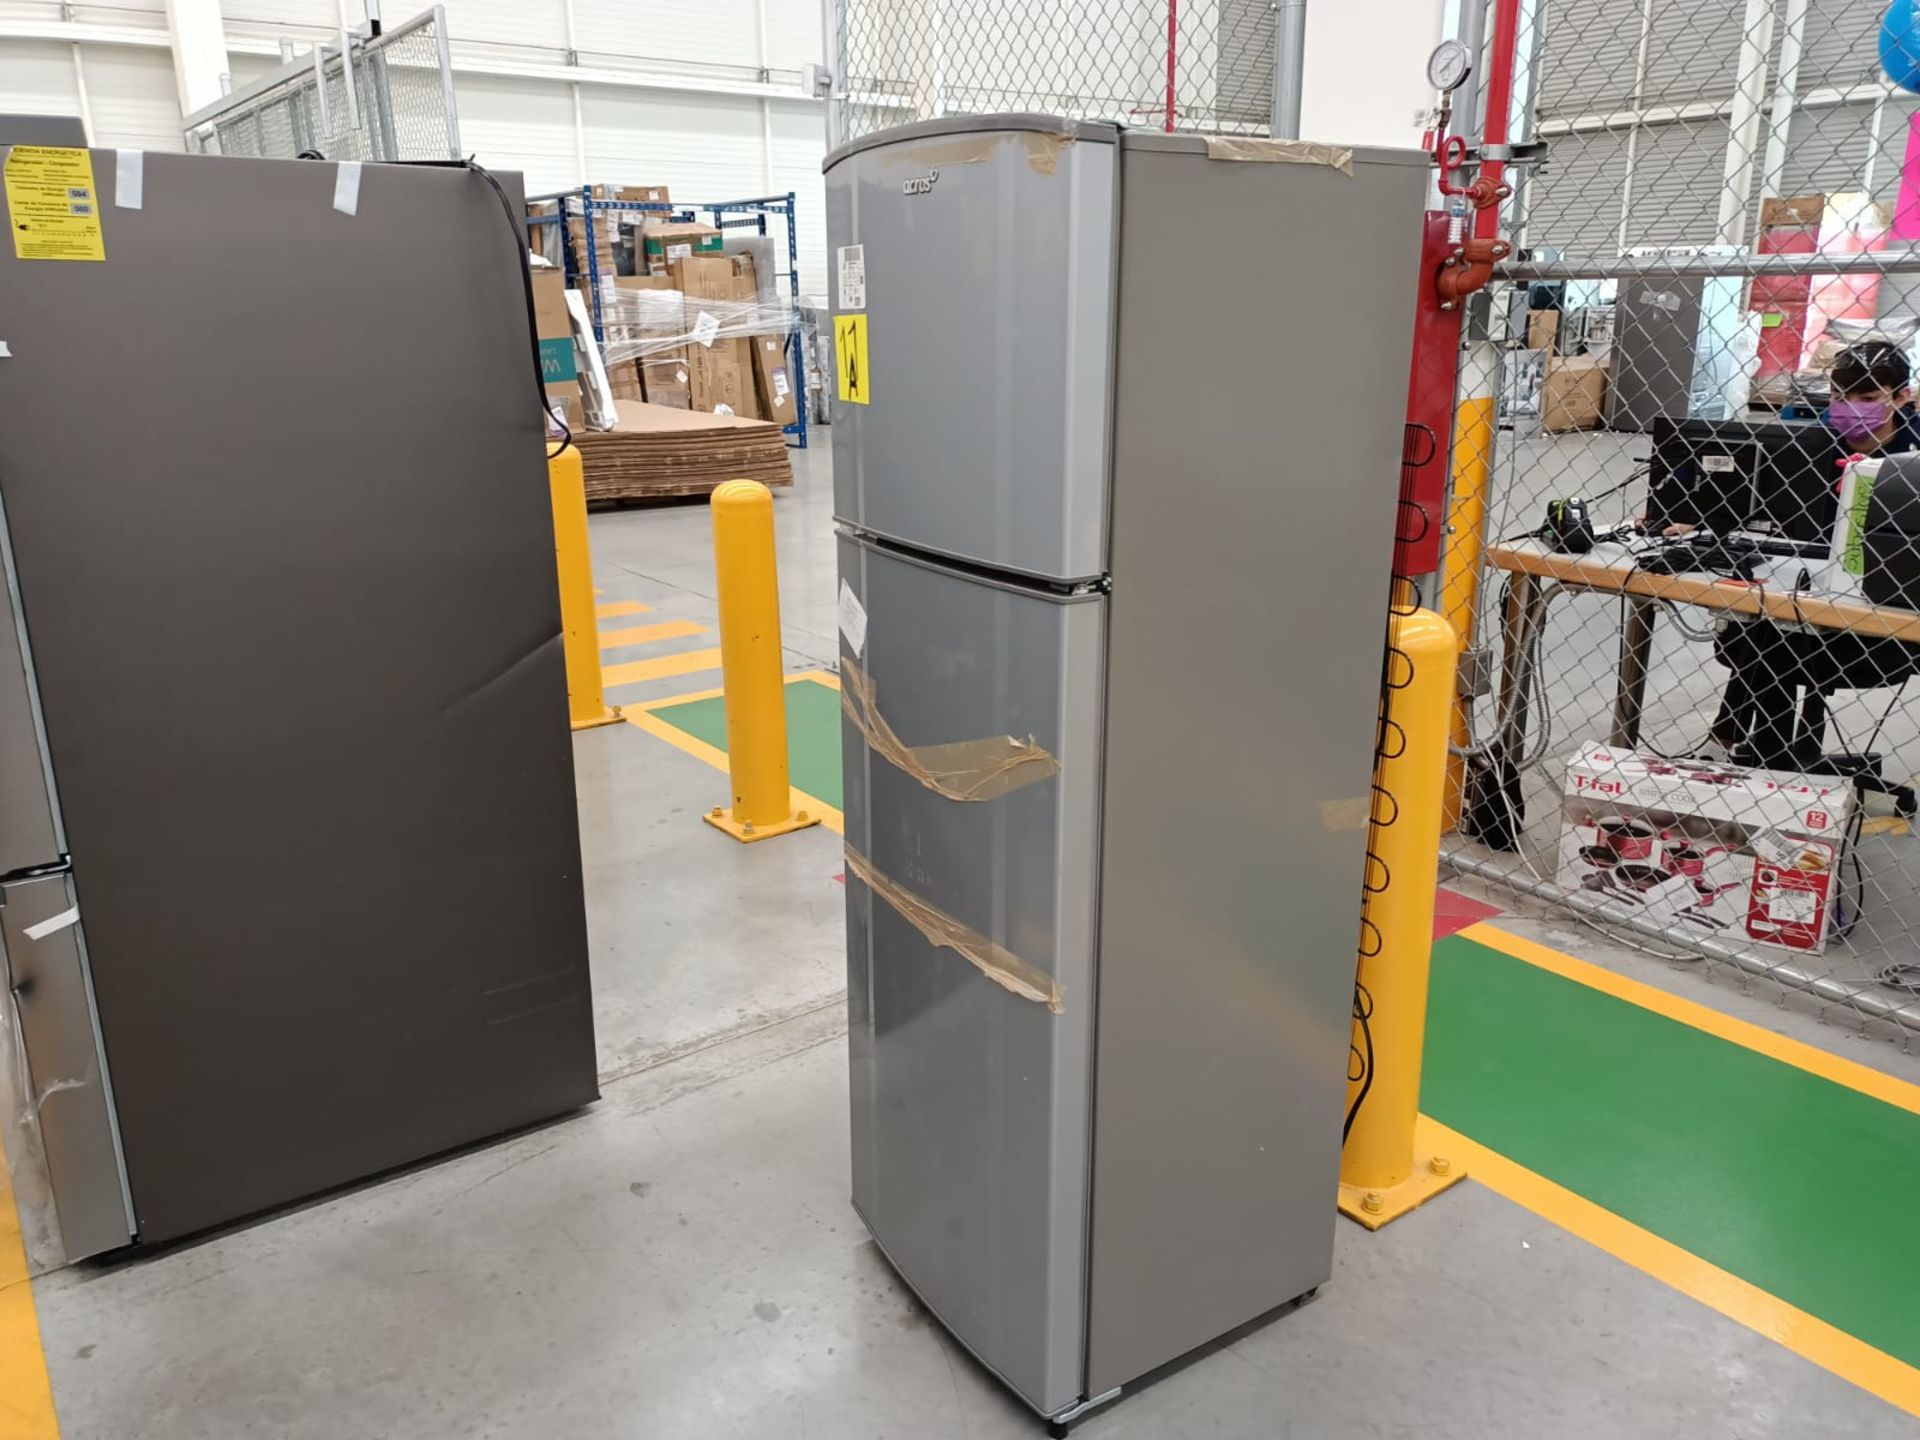 Lote de 2 refrigeradores incluye: 1 refrigerador marca Samsung, modelo RF22A4010S9/EM - Image 22 of 51